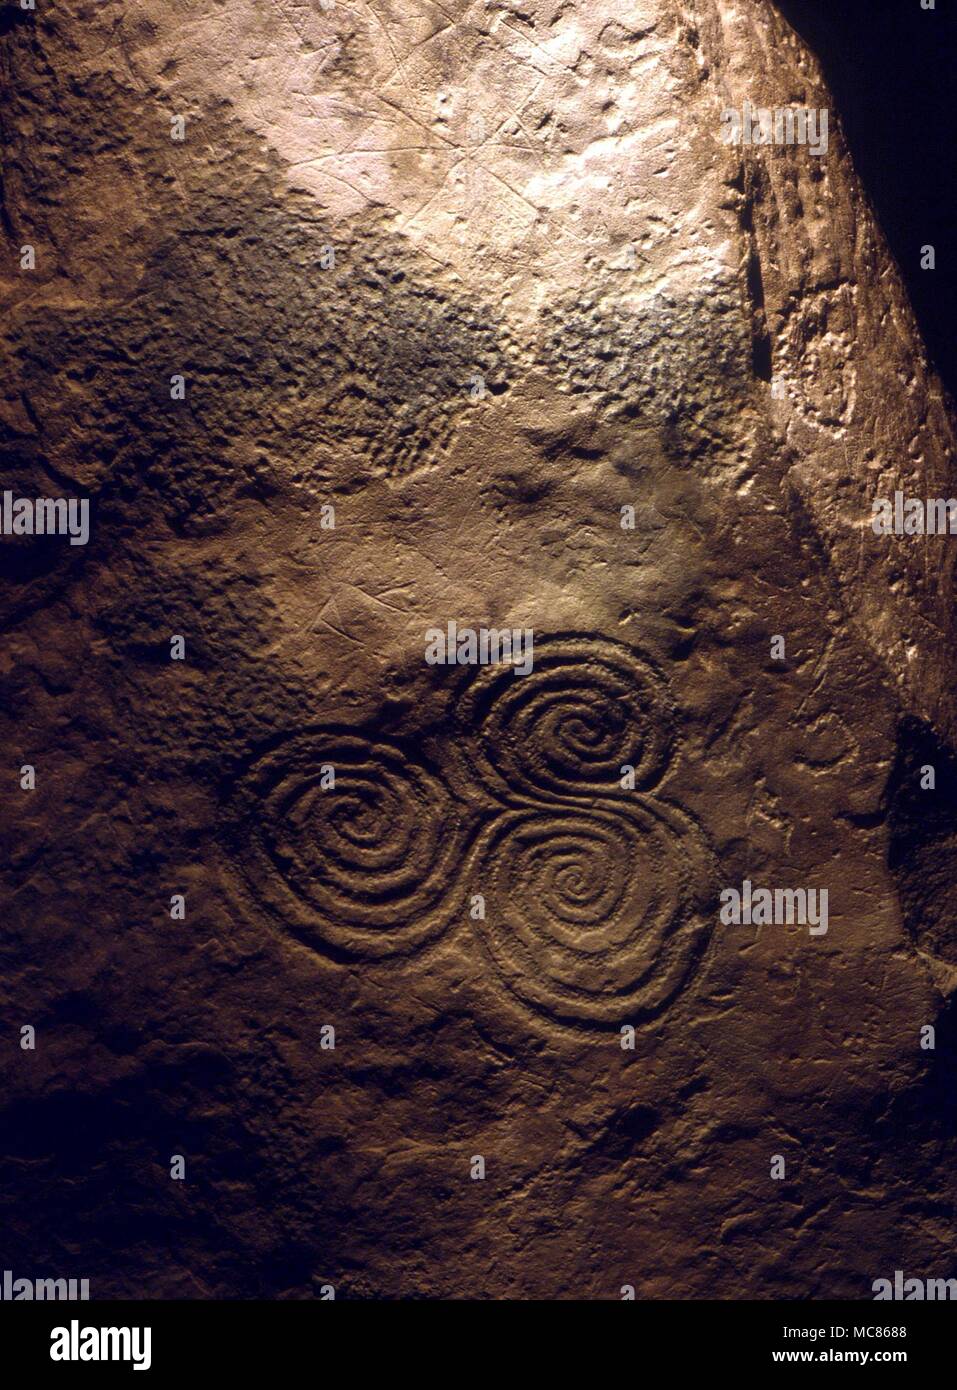 NEWGRANGE (KNOWTH) - Irish sito preistorico. Circa 3.000 BC. Spirale su pietra C10 il tri-spirale su pietra C10 alla fine del passaggio a Newgrange. Questa spirale è sempre nelle tenebre, ma è illuminato quando i raggi del sole penetrano a fondo del passaggio al winter soltice Foto Stock